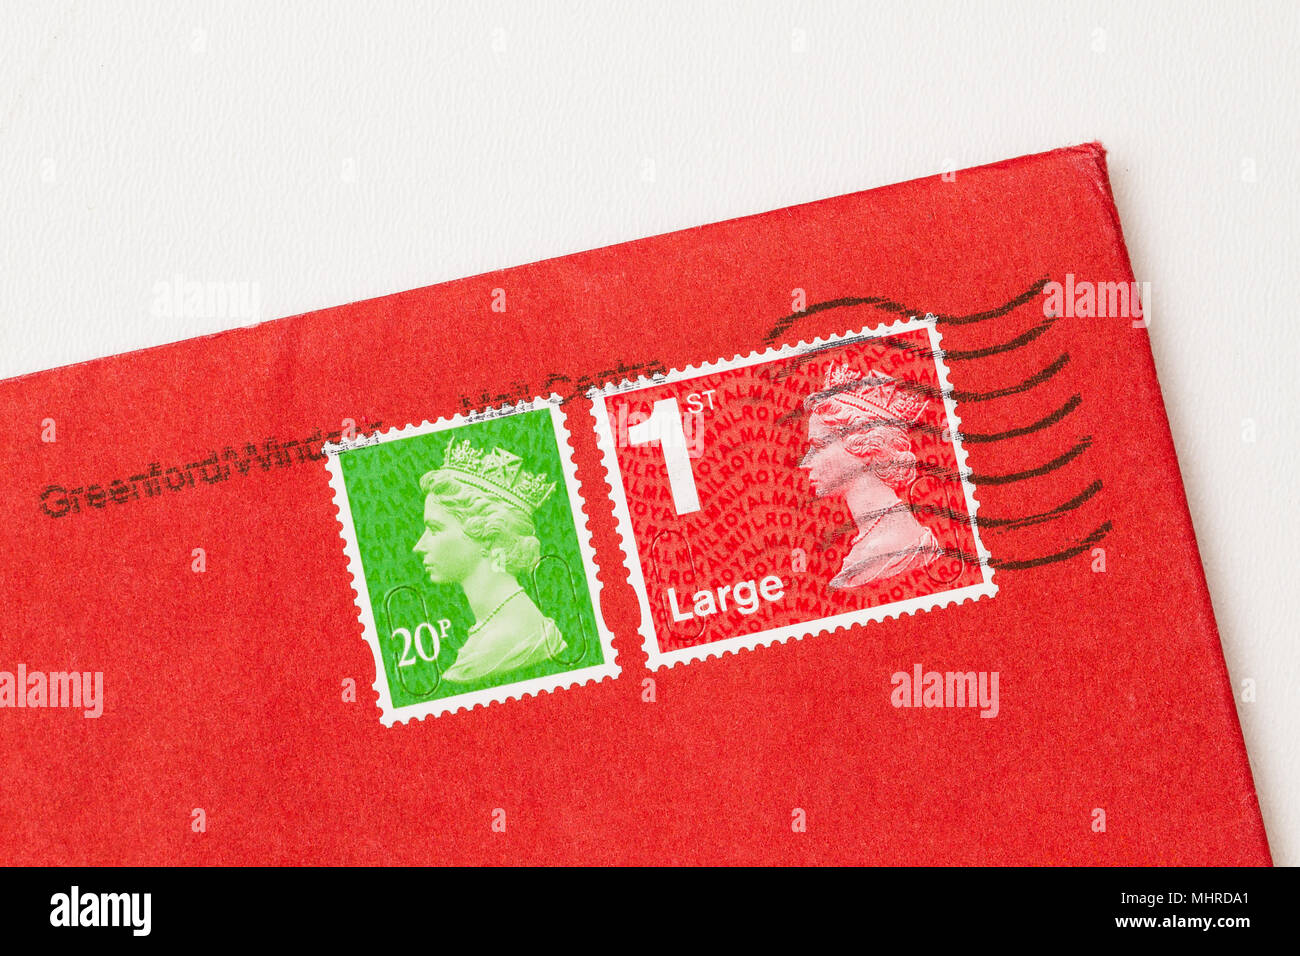 Umschlag Ecke mit 2 Stempel, eine rote, eine grüne, von Königin Elisabeth II. Großbritannien Briefmarke auf rotem Papier. Stockfoto